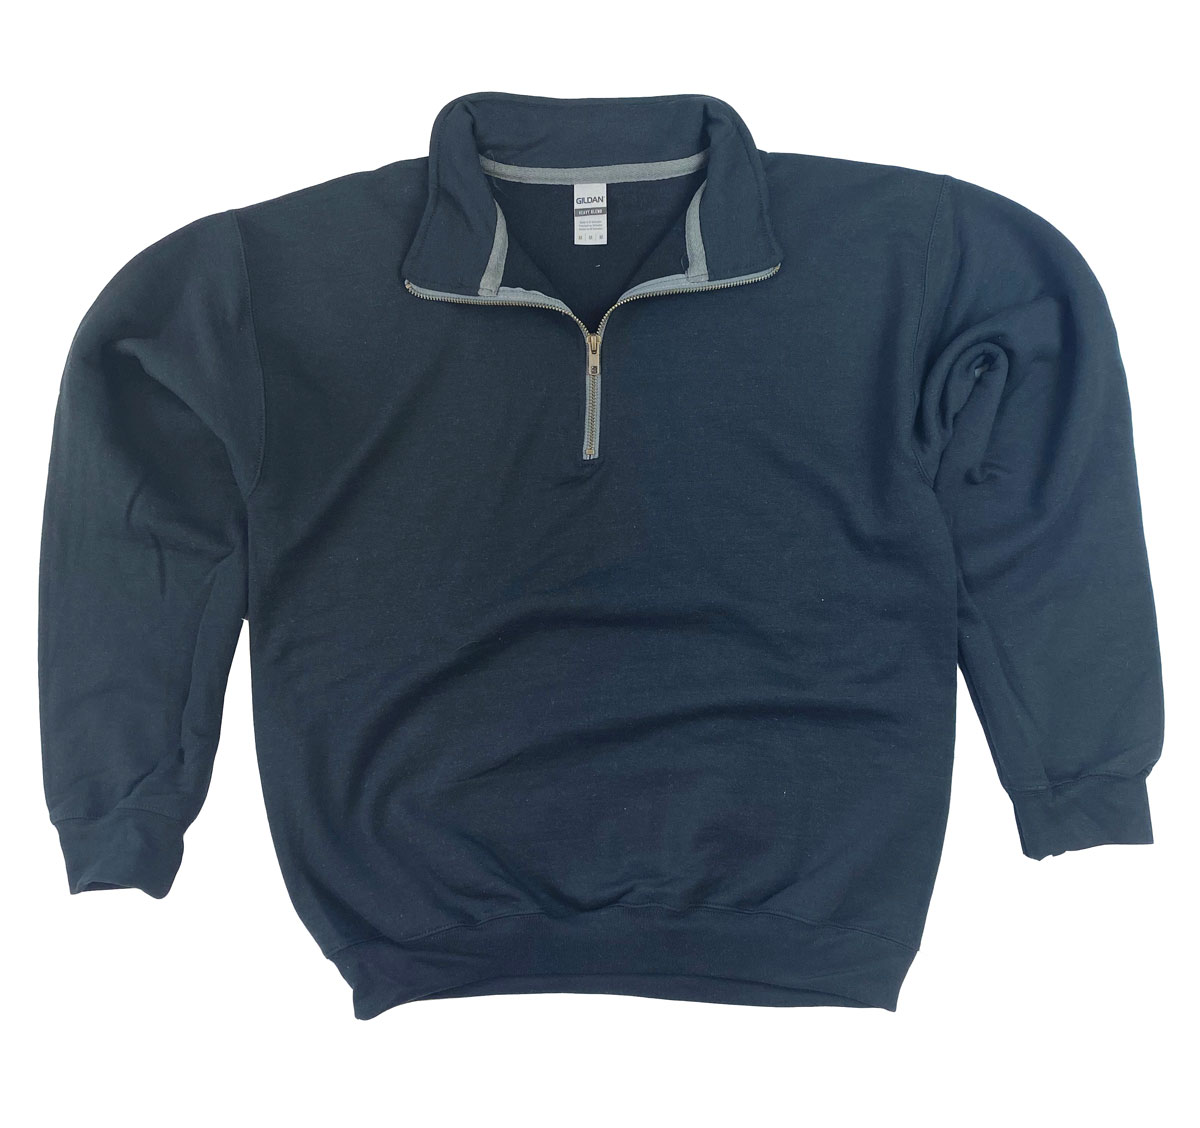 Mens 1/4 Zip Sweatshirts-RG Riley Wholesale Off Price Clothing ...